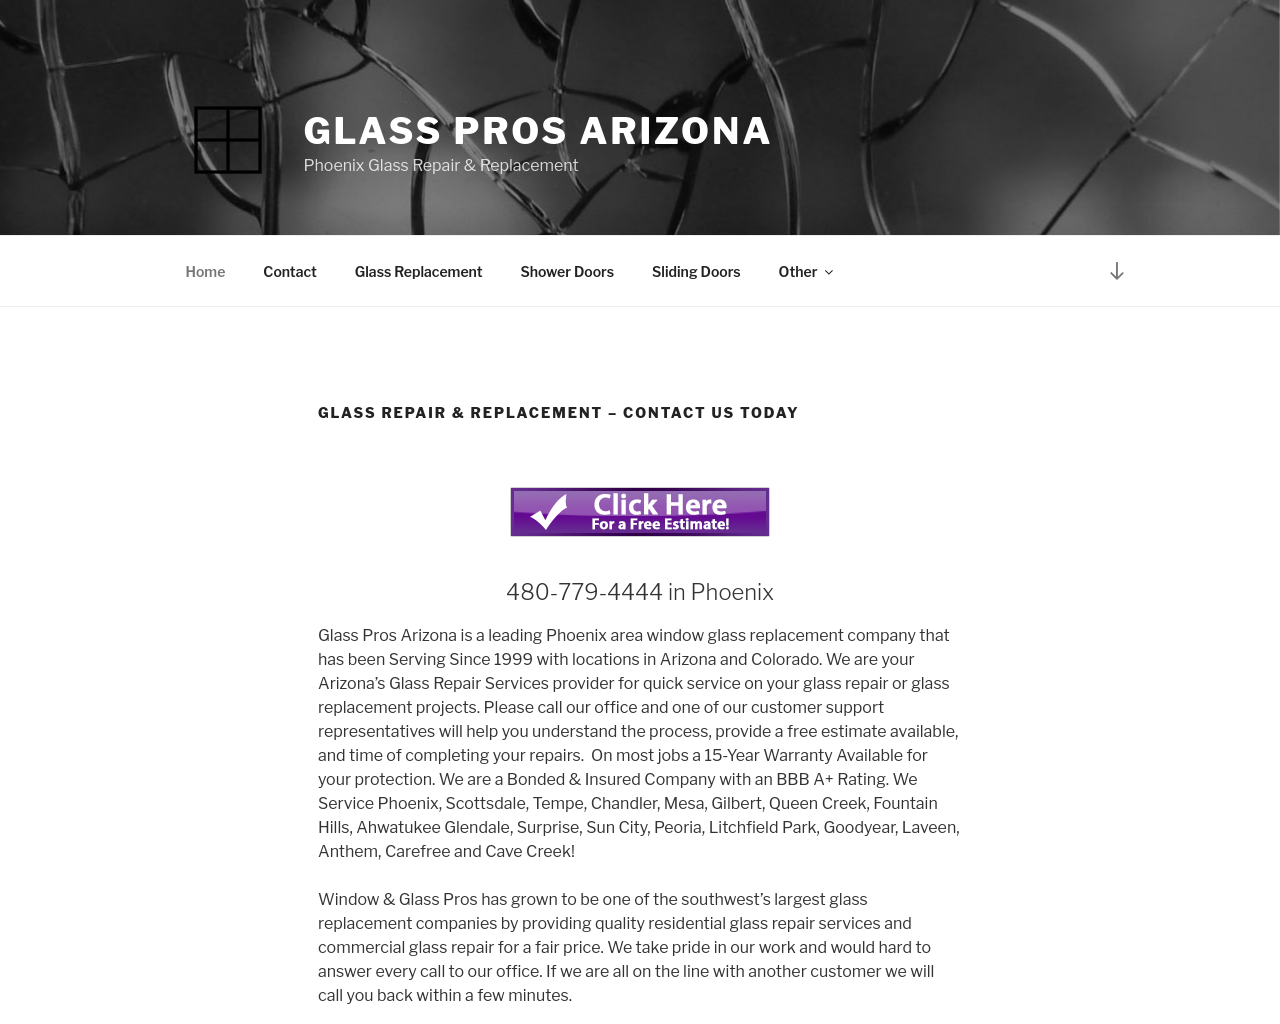 glassprosaz.com